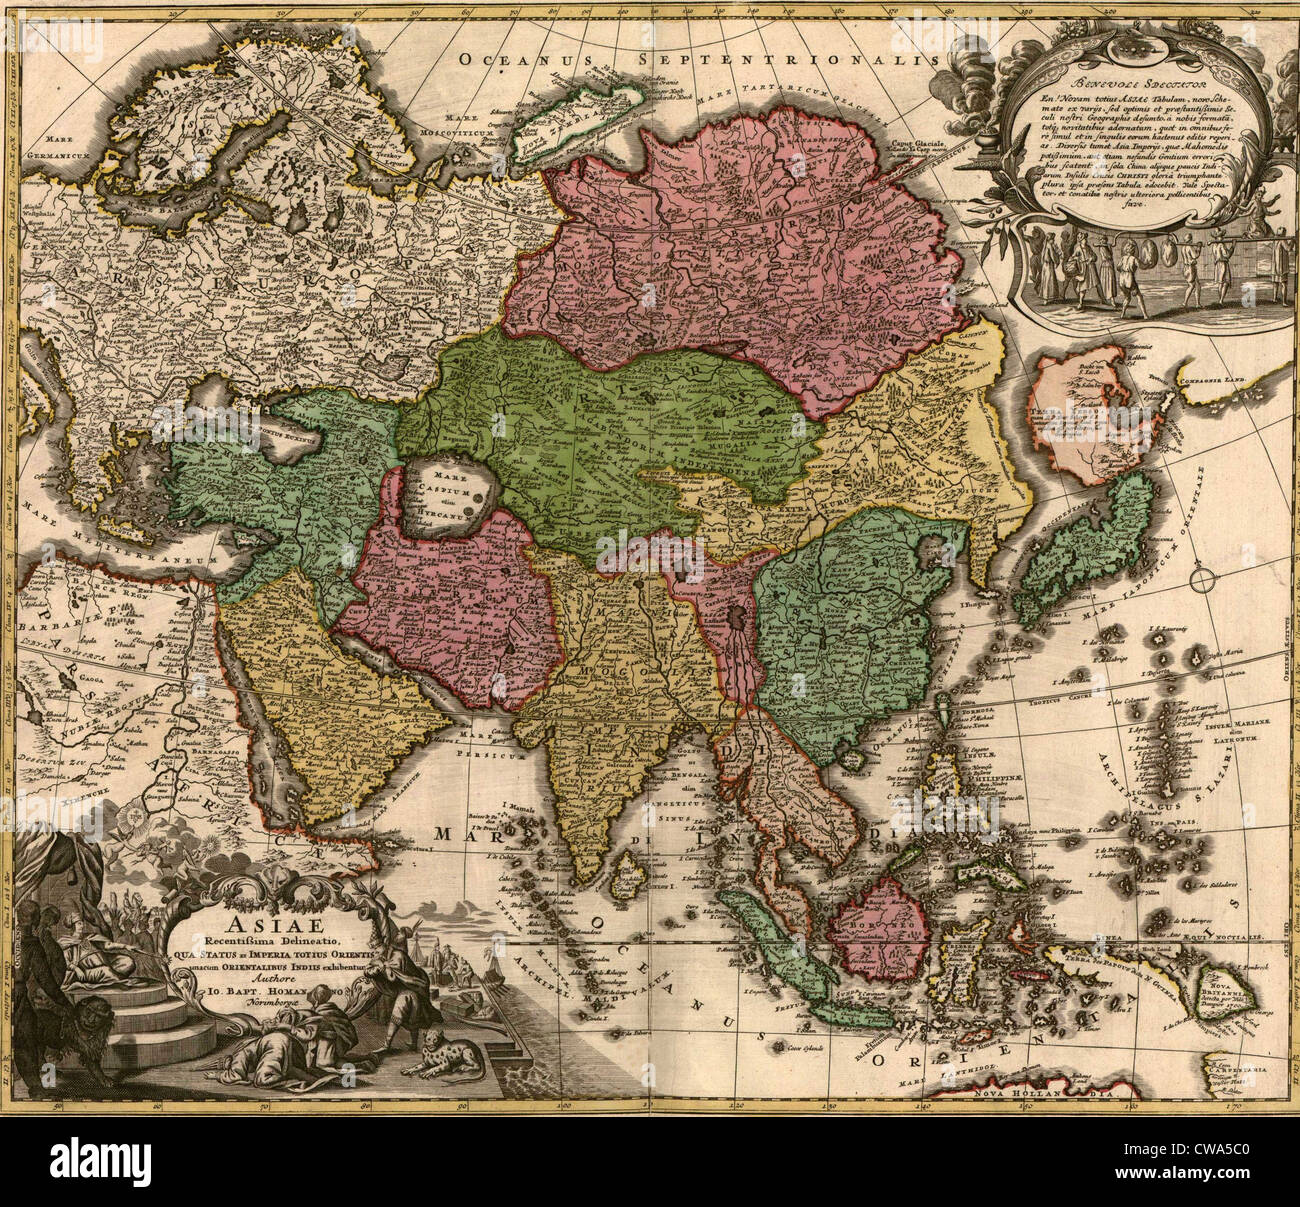 1724-Karte von Asien und Inseln von Ostindien. Zentralen und westlichen Asien von den Tataren besetzt sind. Stockfoto